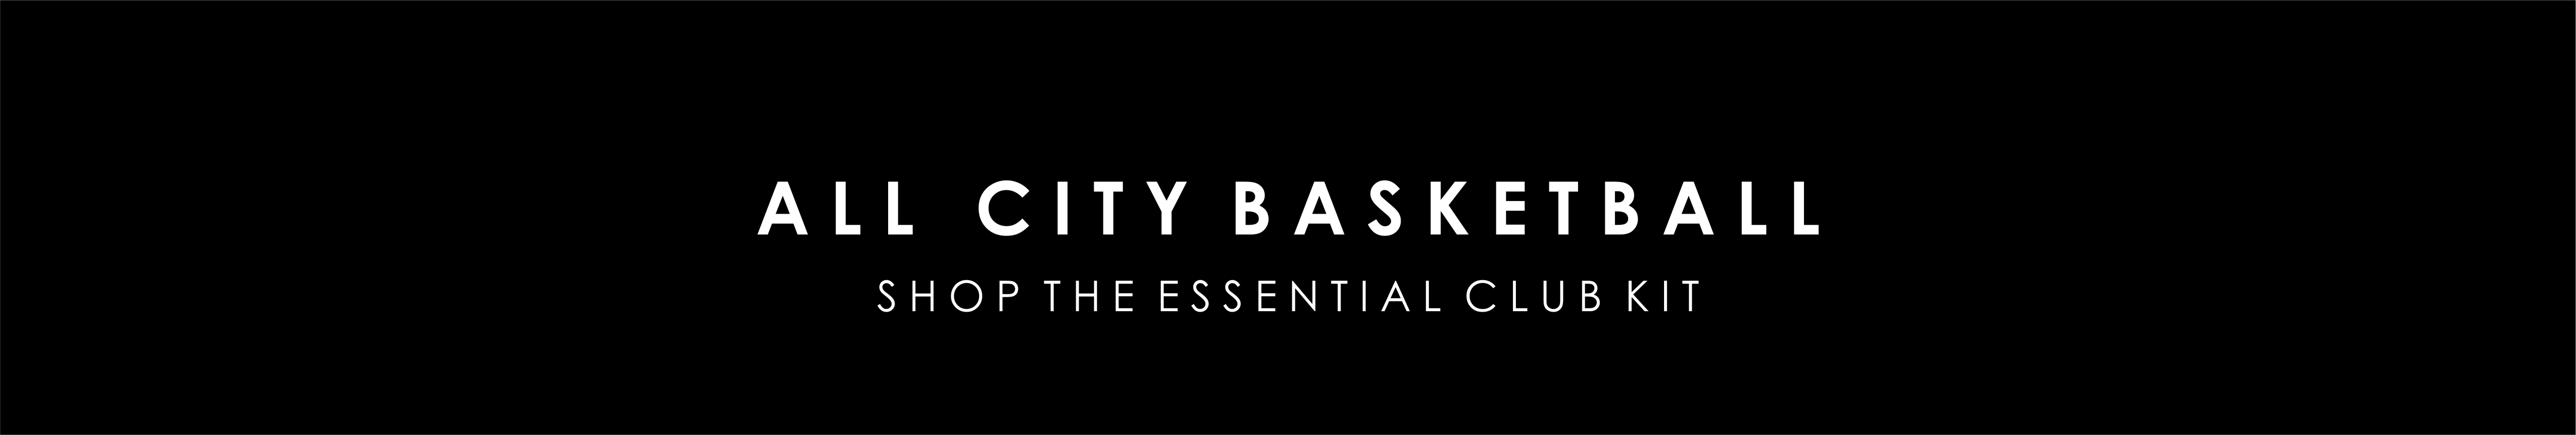 all-city-basketball-banner-1.jpg